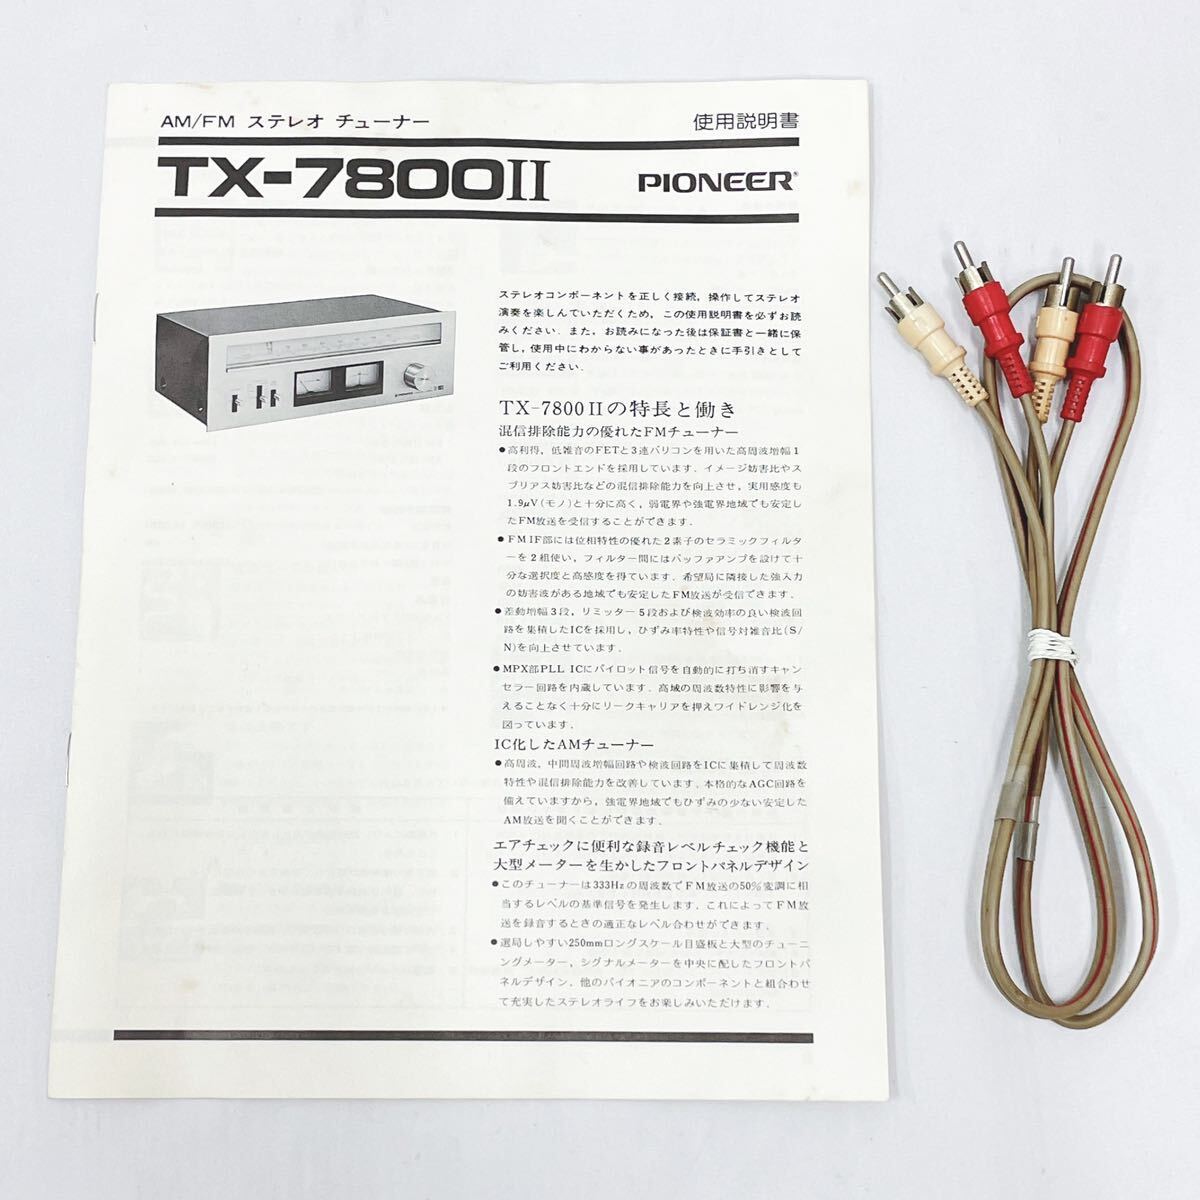  электризация подтверждено PIONEER Pioneer TX-7800Ⅱ AM/FM стерео тюнер звуковая аппаратура руководство пользователя с коробкой R.04100